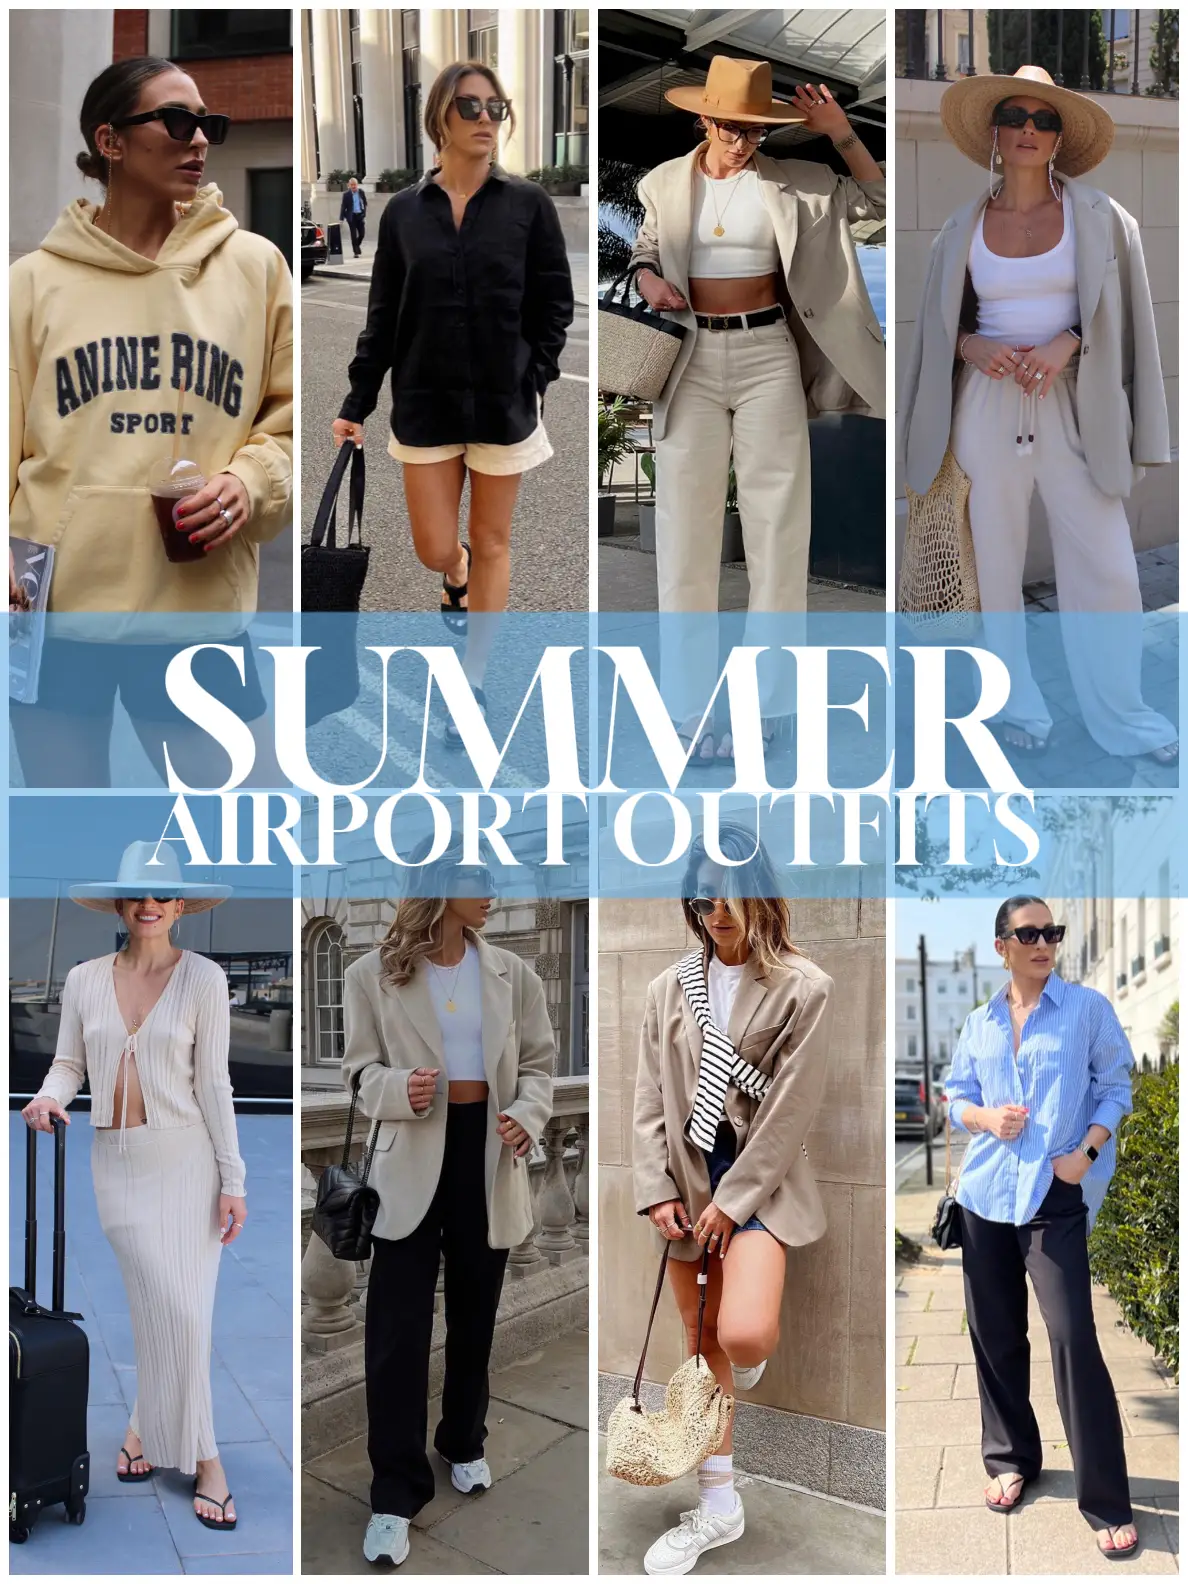 Airport outfits  Airport outfit, Air port outfit, Louis vuitton